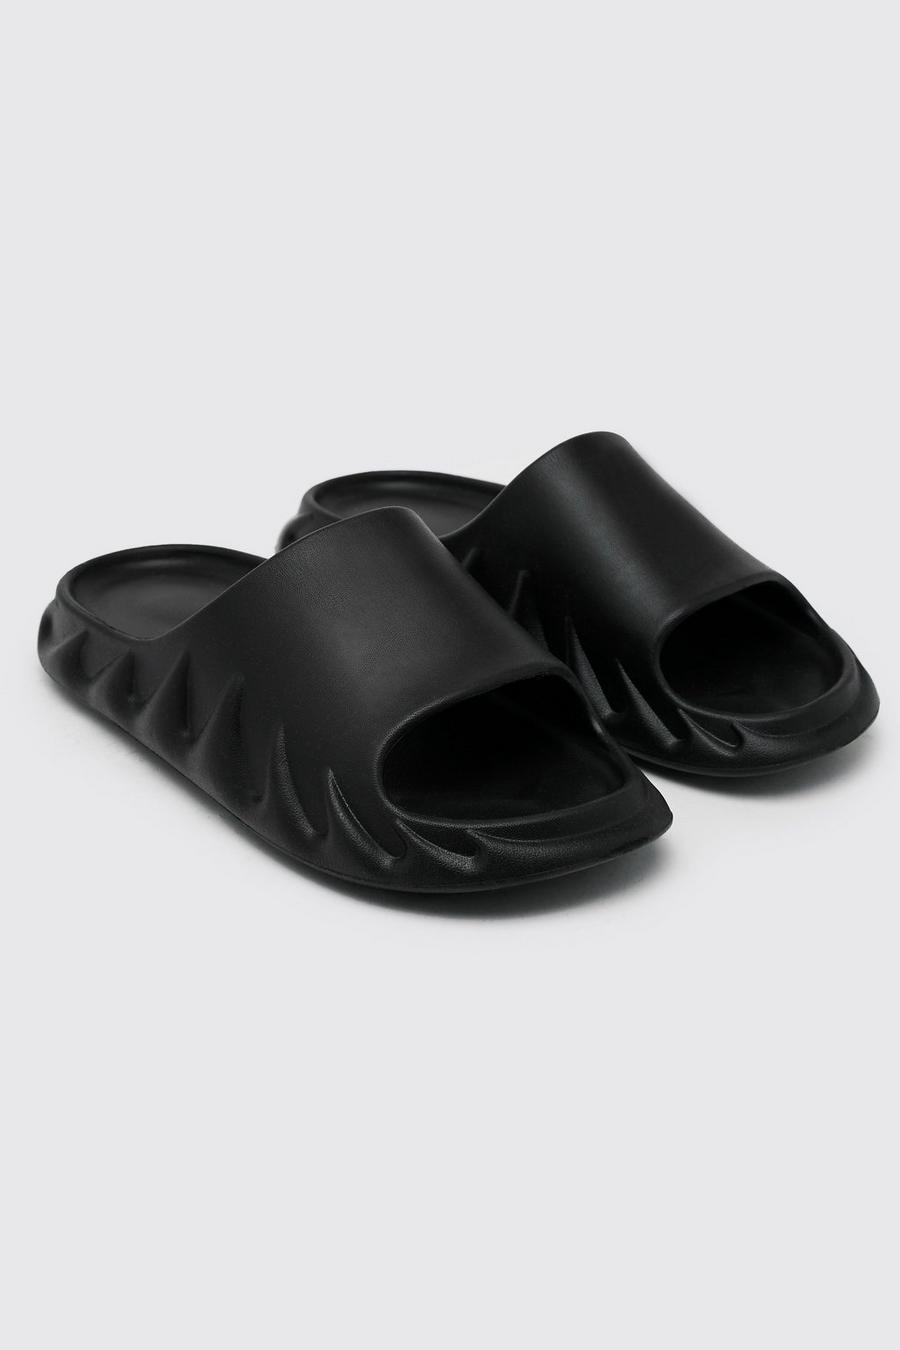 Sandalias gruesas, Black negro